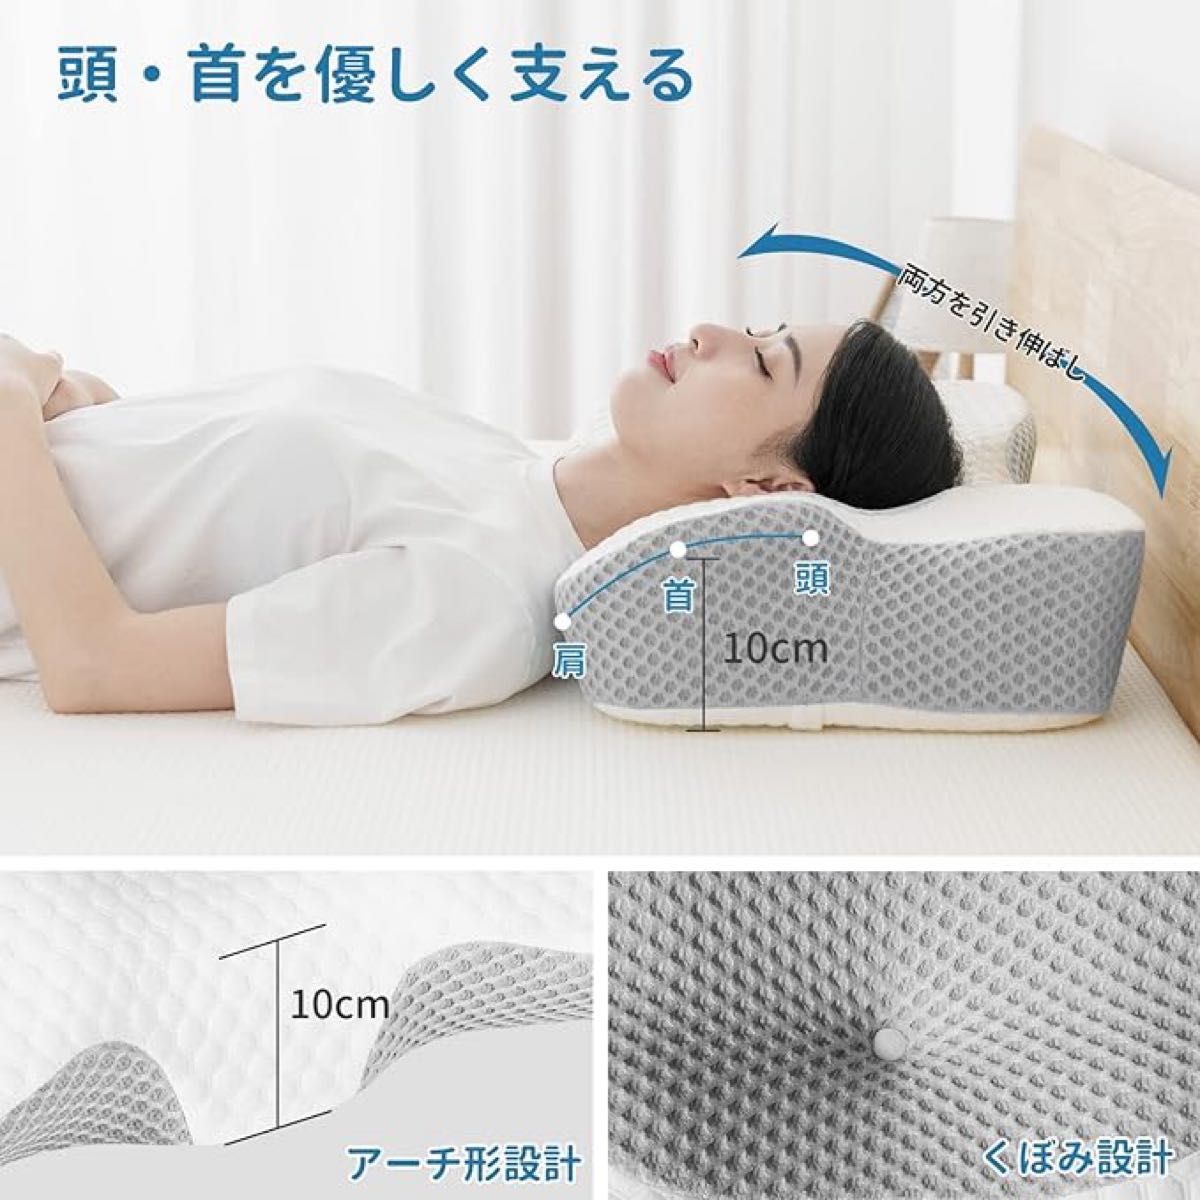 枕 低反発 肩がラク 安眠 中空設計 低反発枕 くぼみ形状 人間工学設計 快眠枕 仰向き 横向き いびき防止 通気性 洗えるカバー